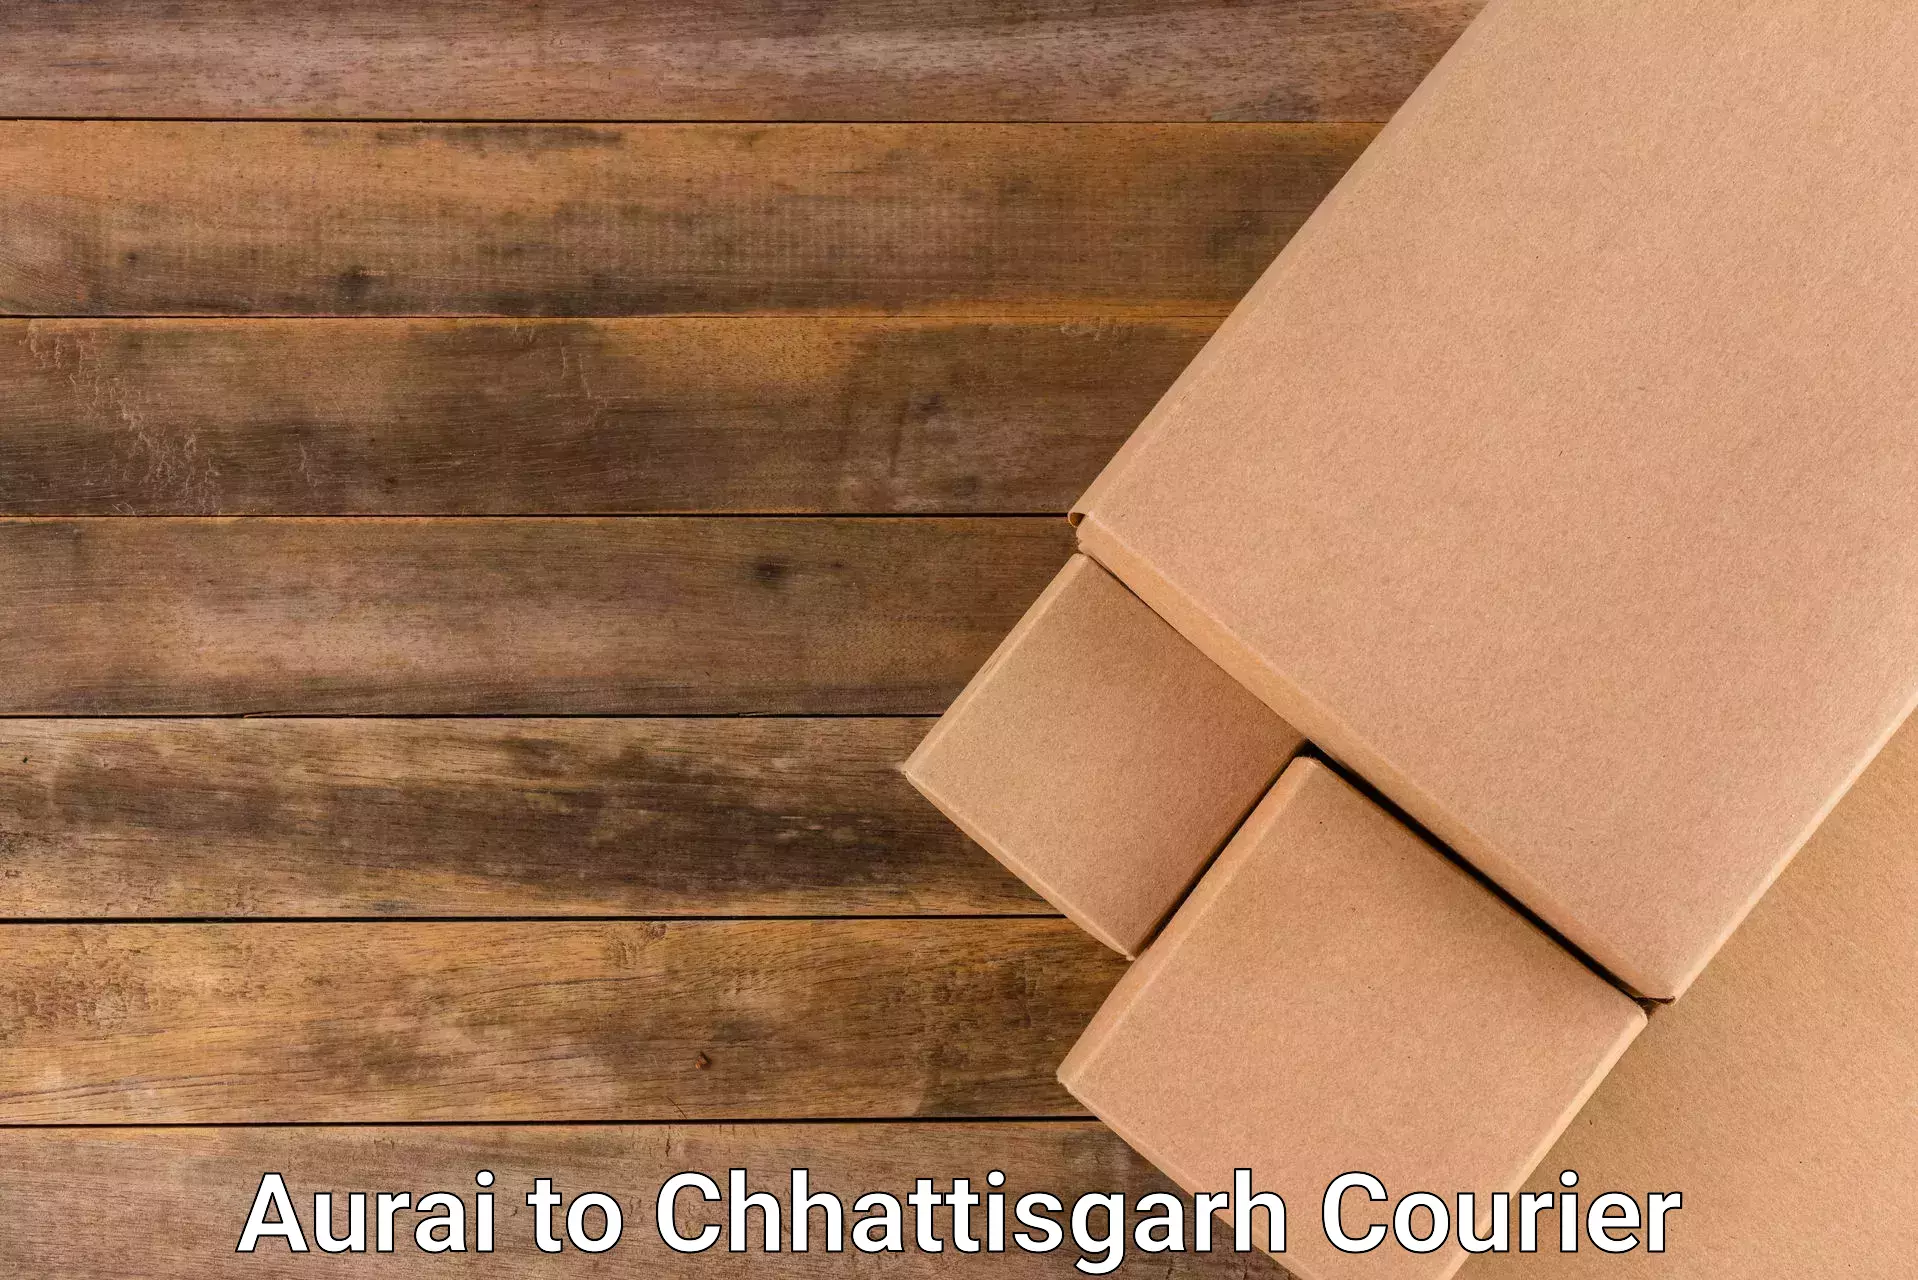 Affordable logistics services Aurai to Chhattisgarh